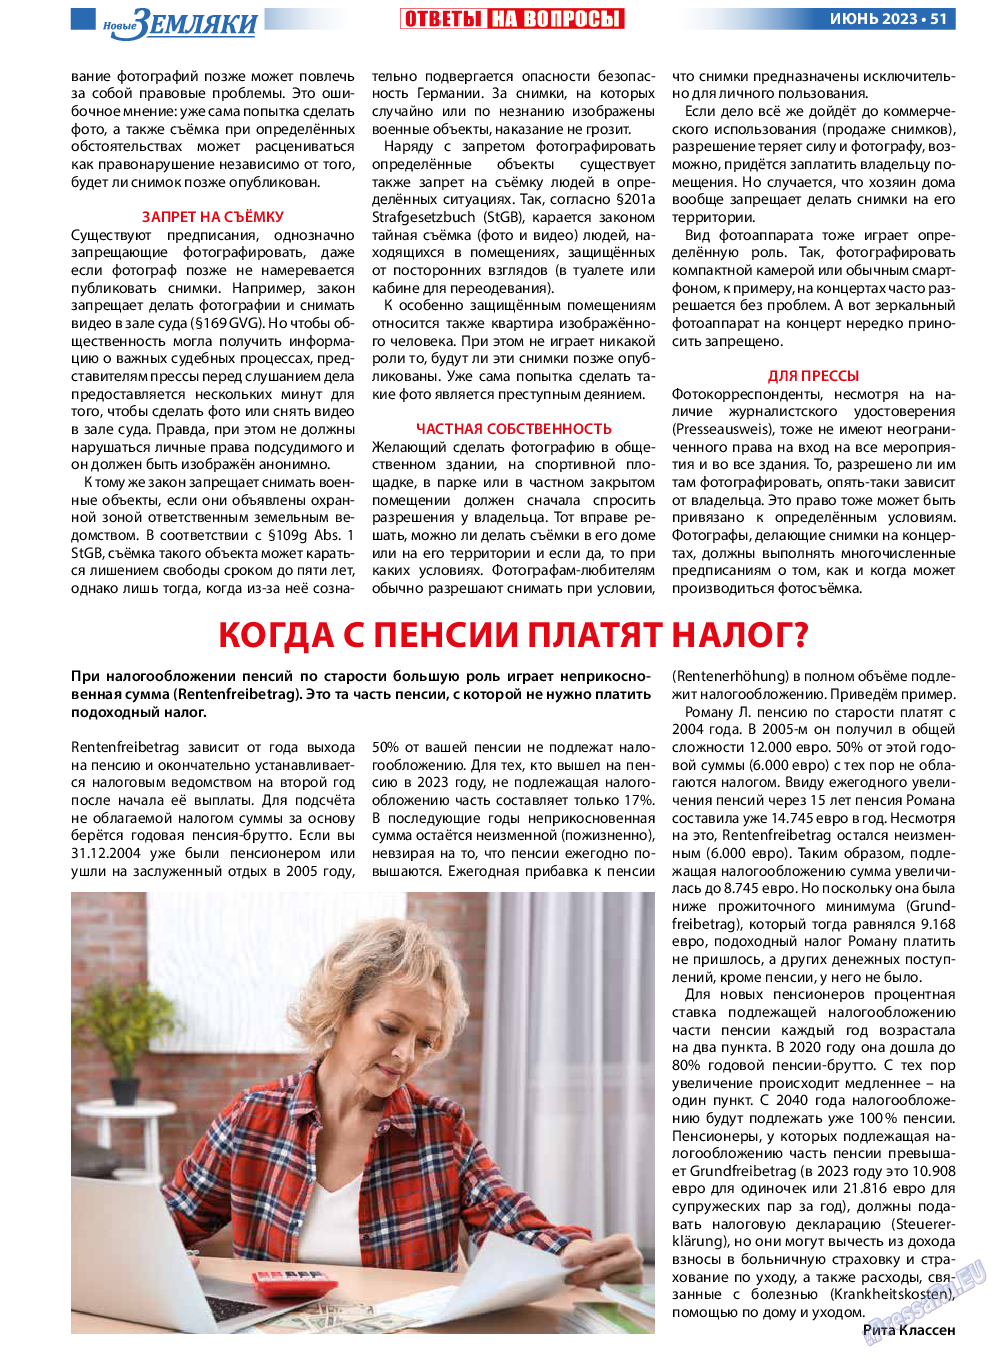 Новые Земляки, газета. 2023 №6 стр.51